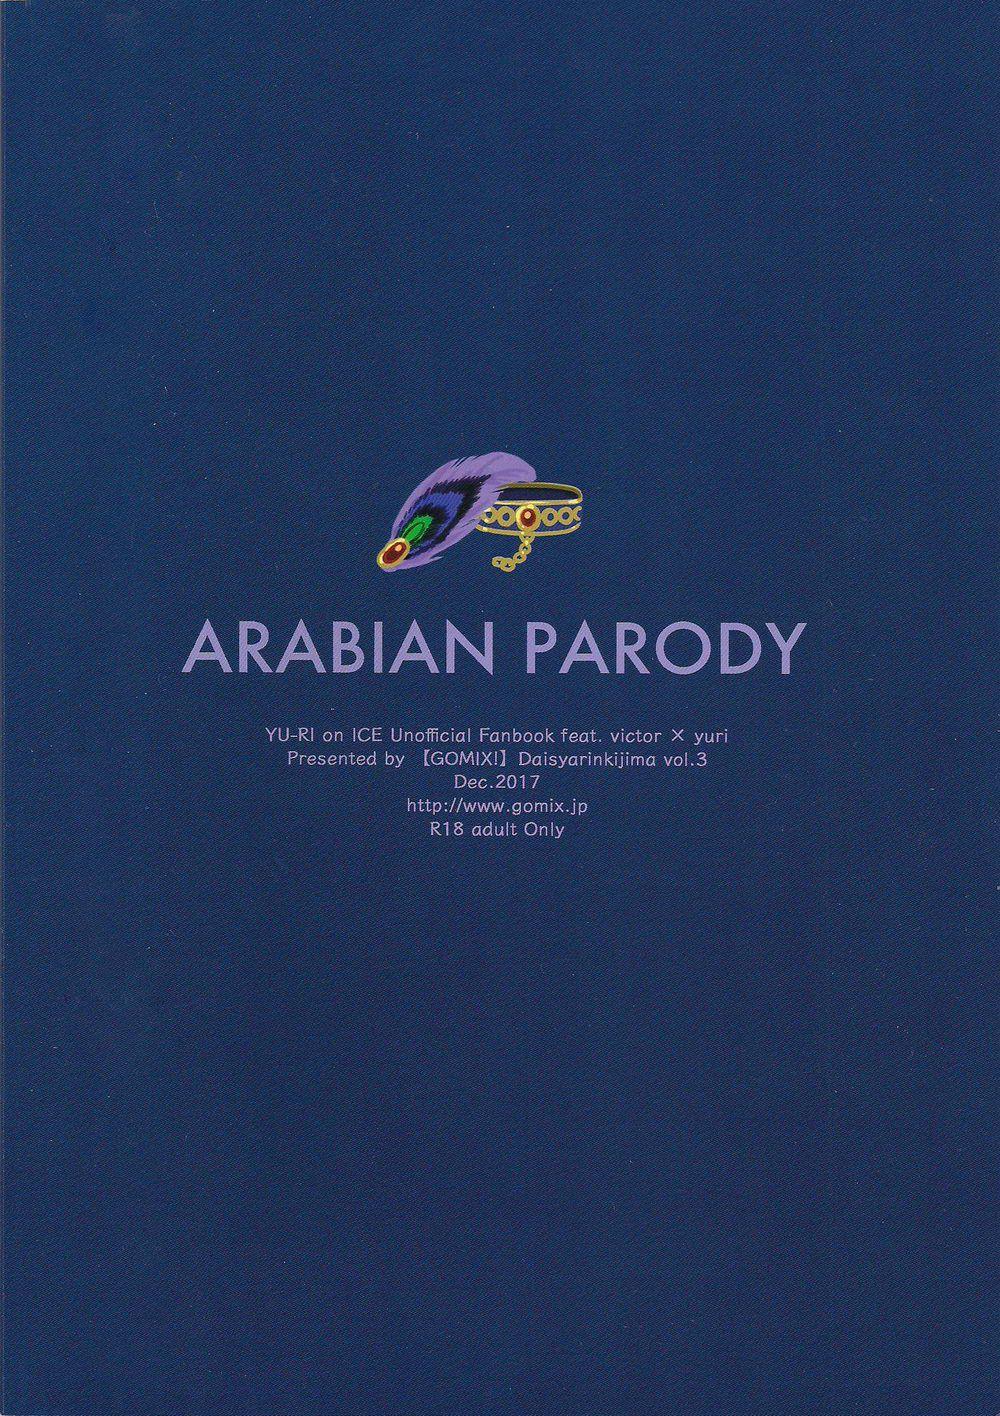 ARABIAN PARODY 1